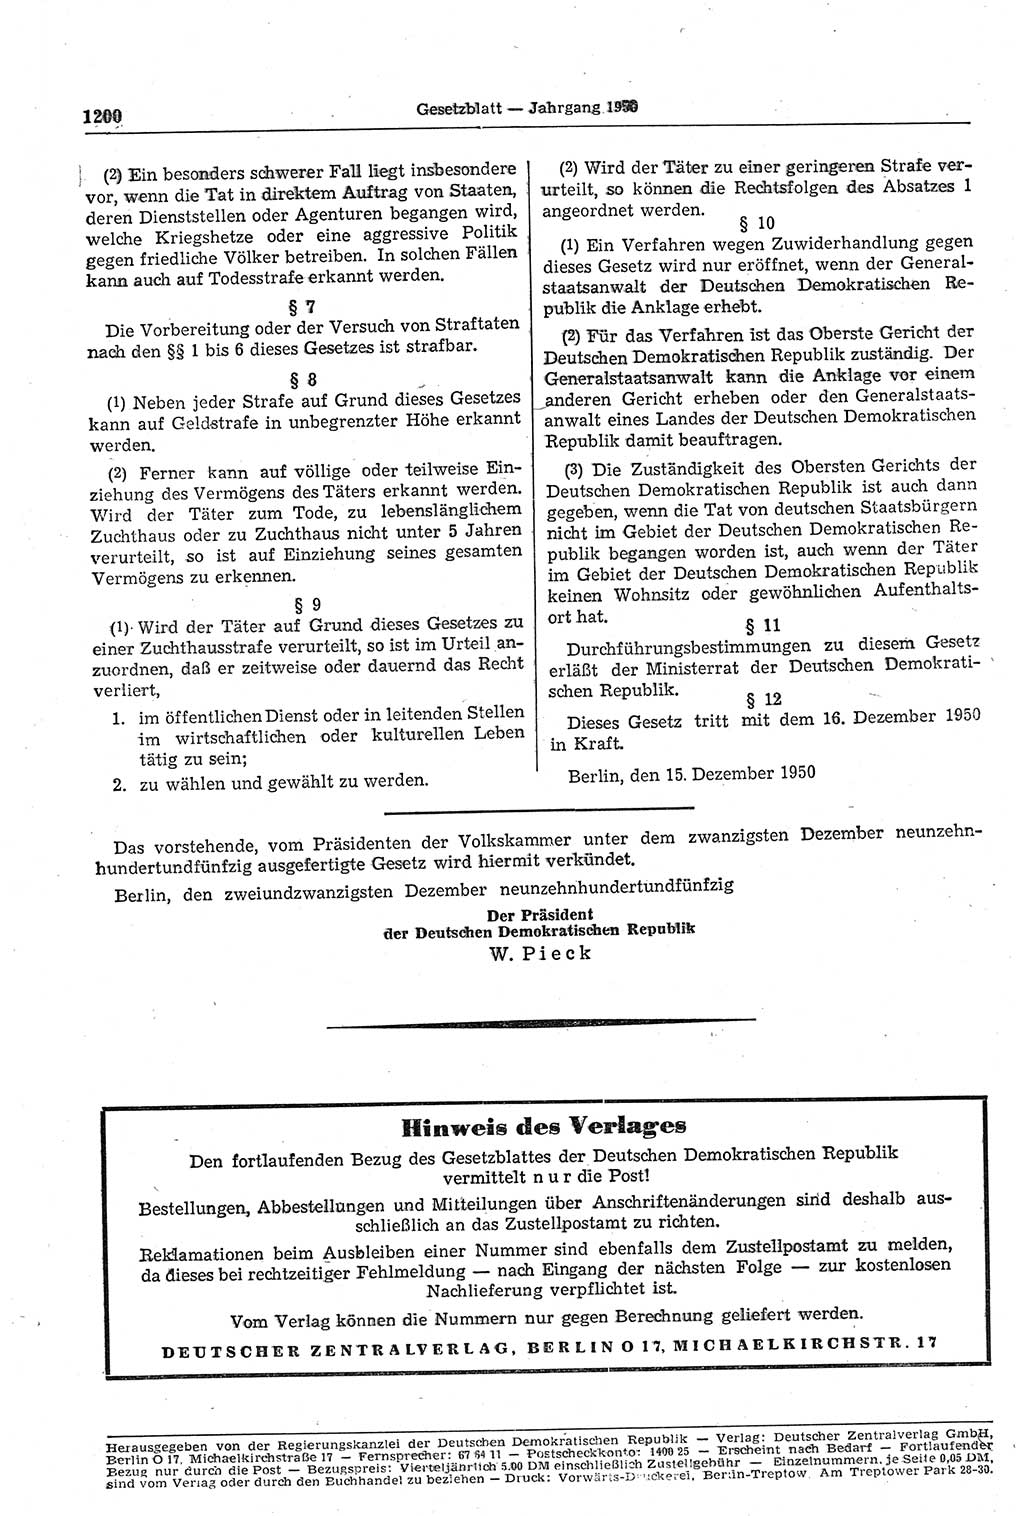 Gesetzblatt (GBl.) der Deutschen Demokratischen Republik (DDR) 1950, Seite 1200 (GBl. DDR 1950, S. 1200)